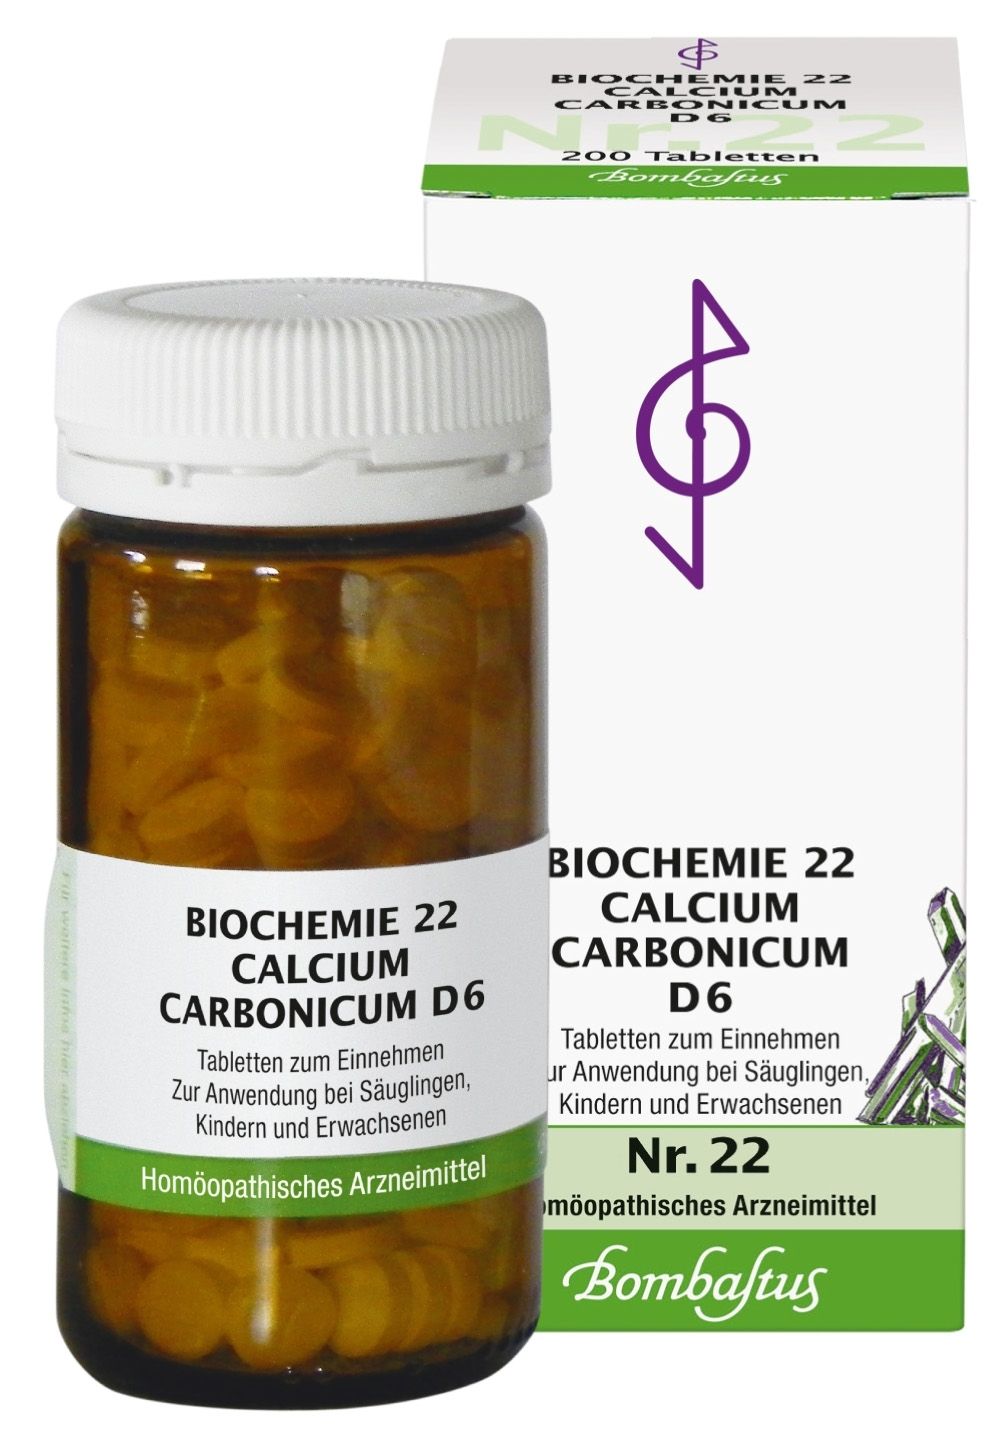 Biochemie 22 Calcium carbonicum D 6